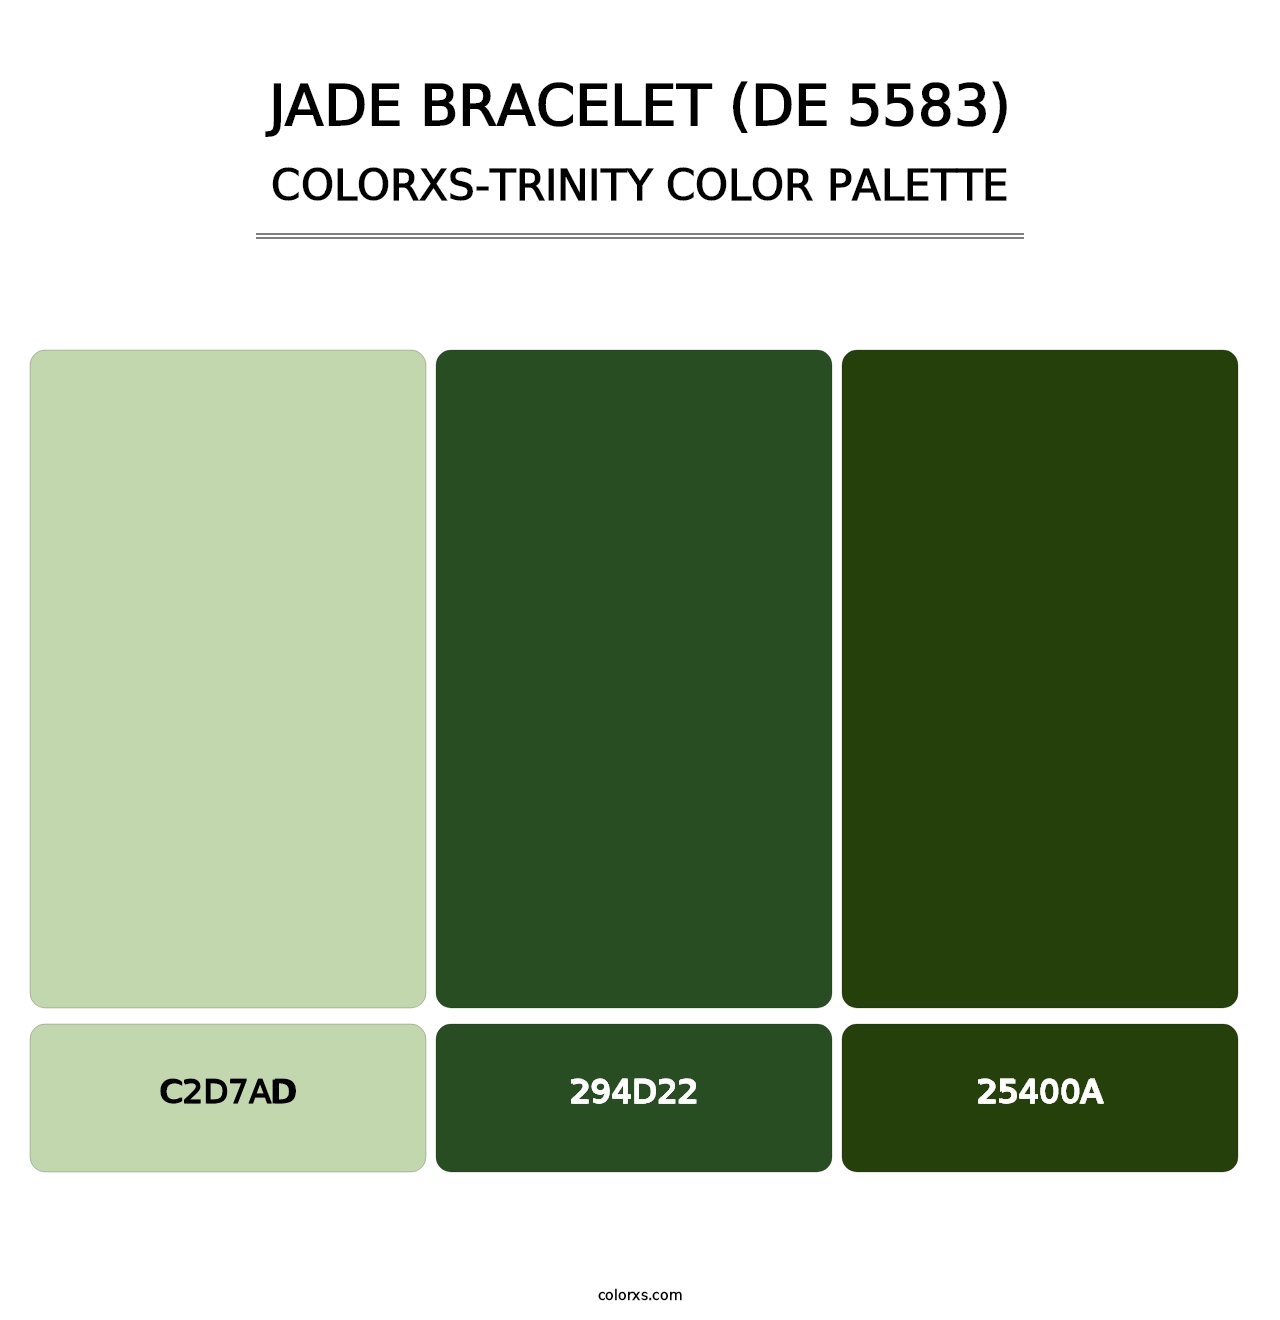 Jade Bracelet (DE 5583) - Colorxs Trinity Palette